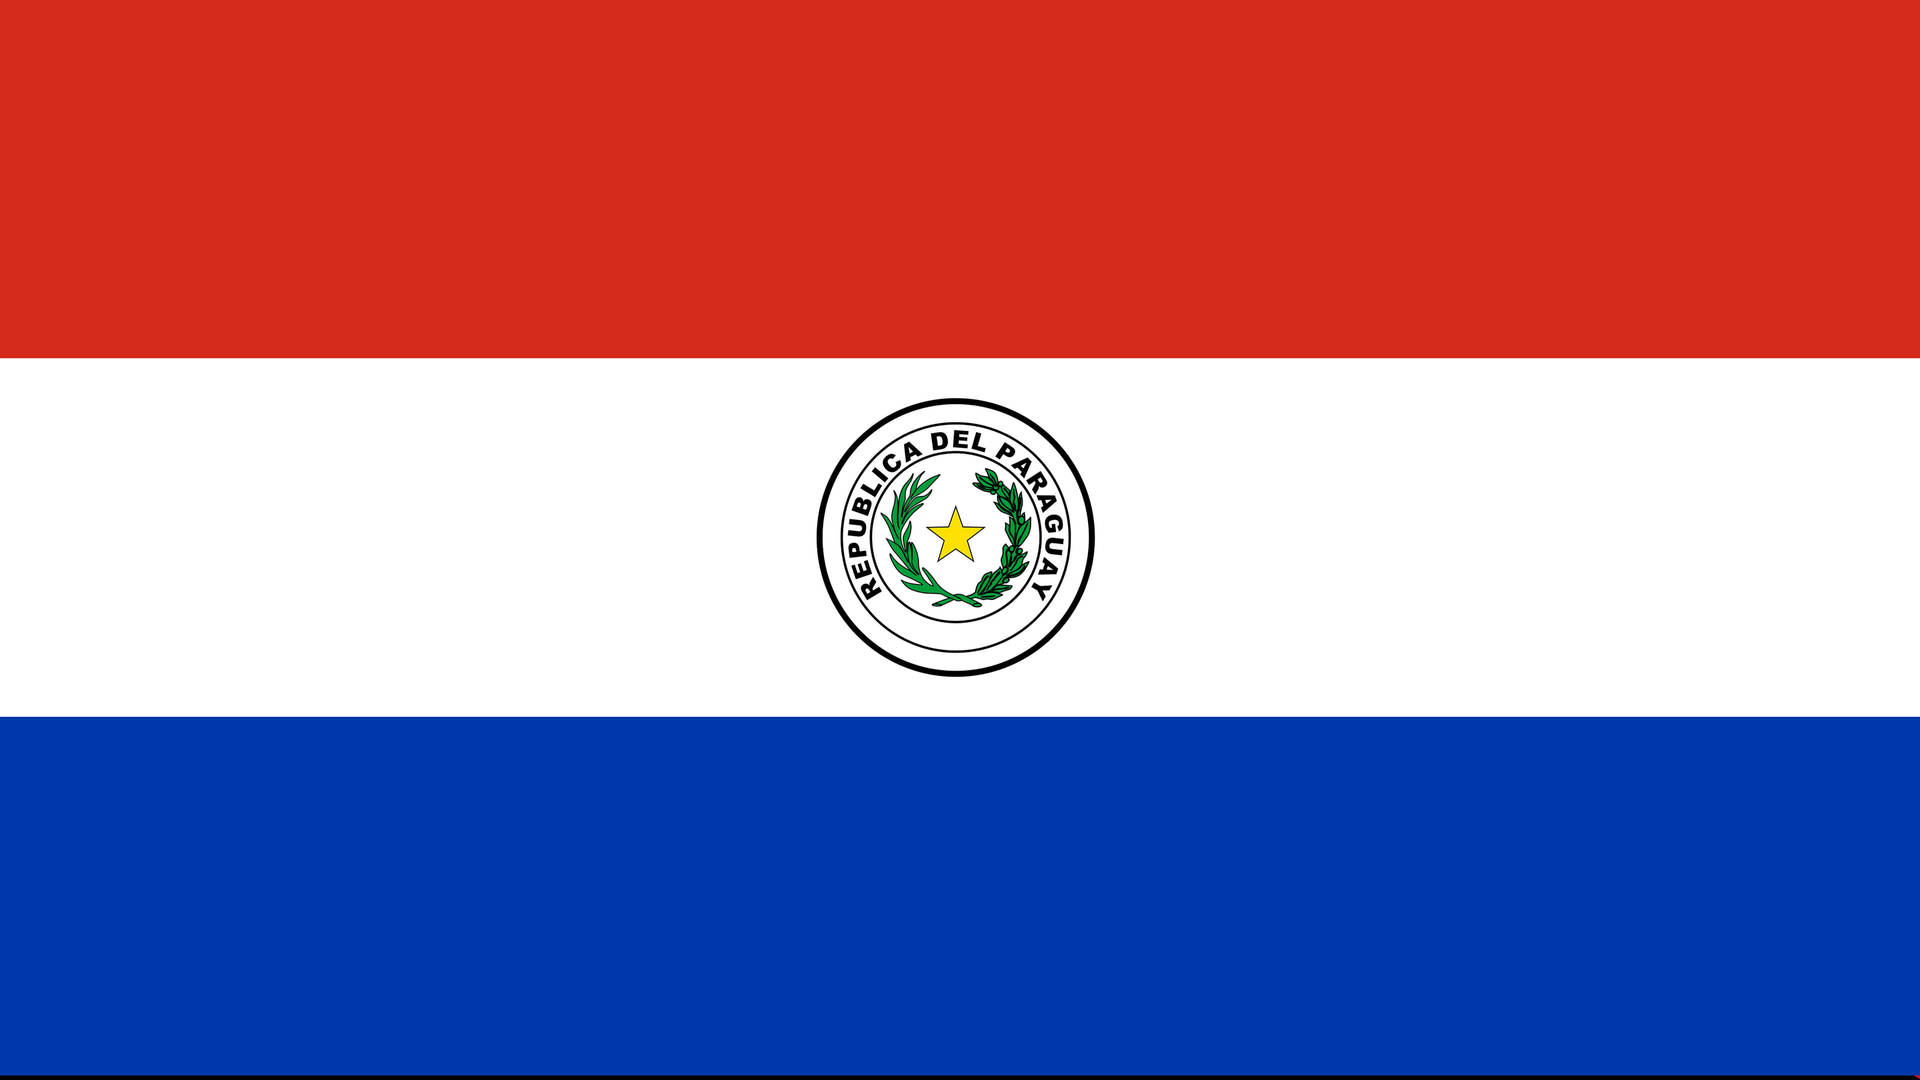 Paraguay's Vibrant Flag Wallpaper